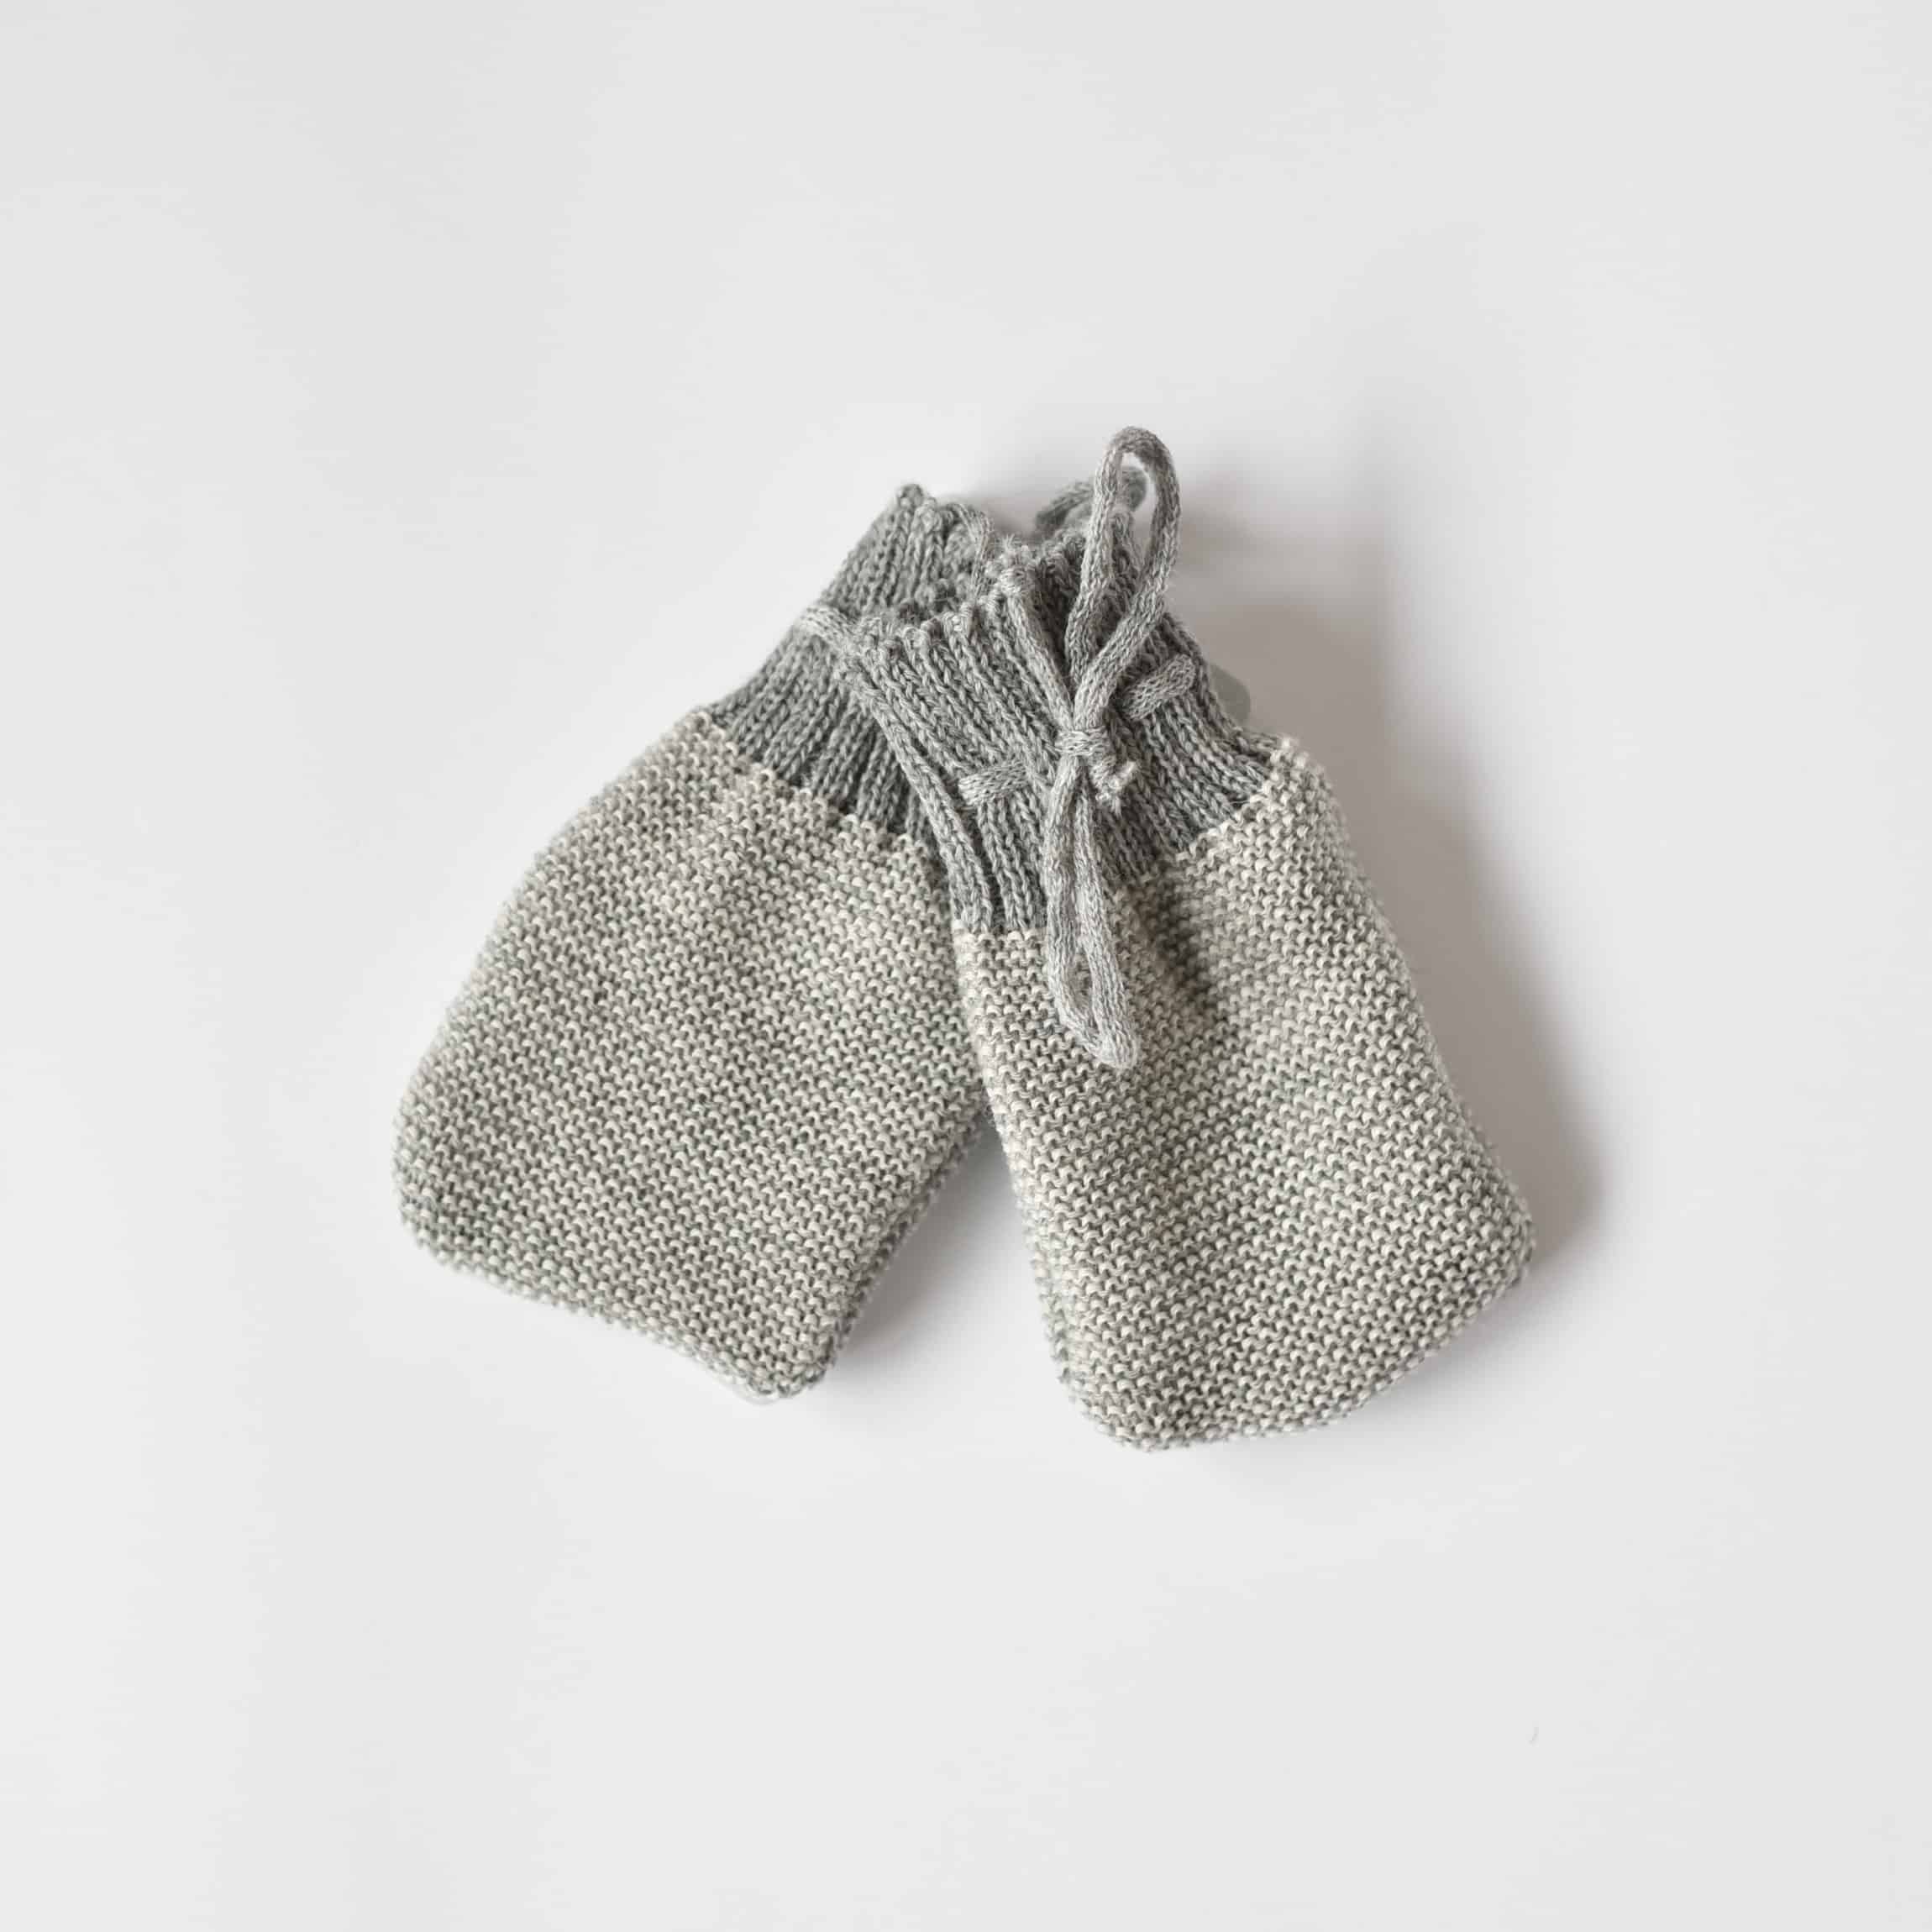 Moufles fille blush en tricot fantaisie ajouré laine mérinos et cachemire :  Accessoires bébé